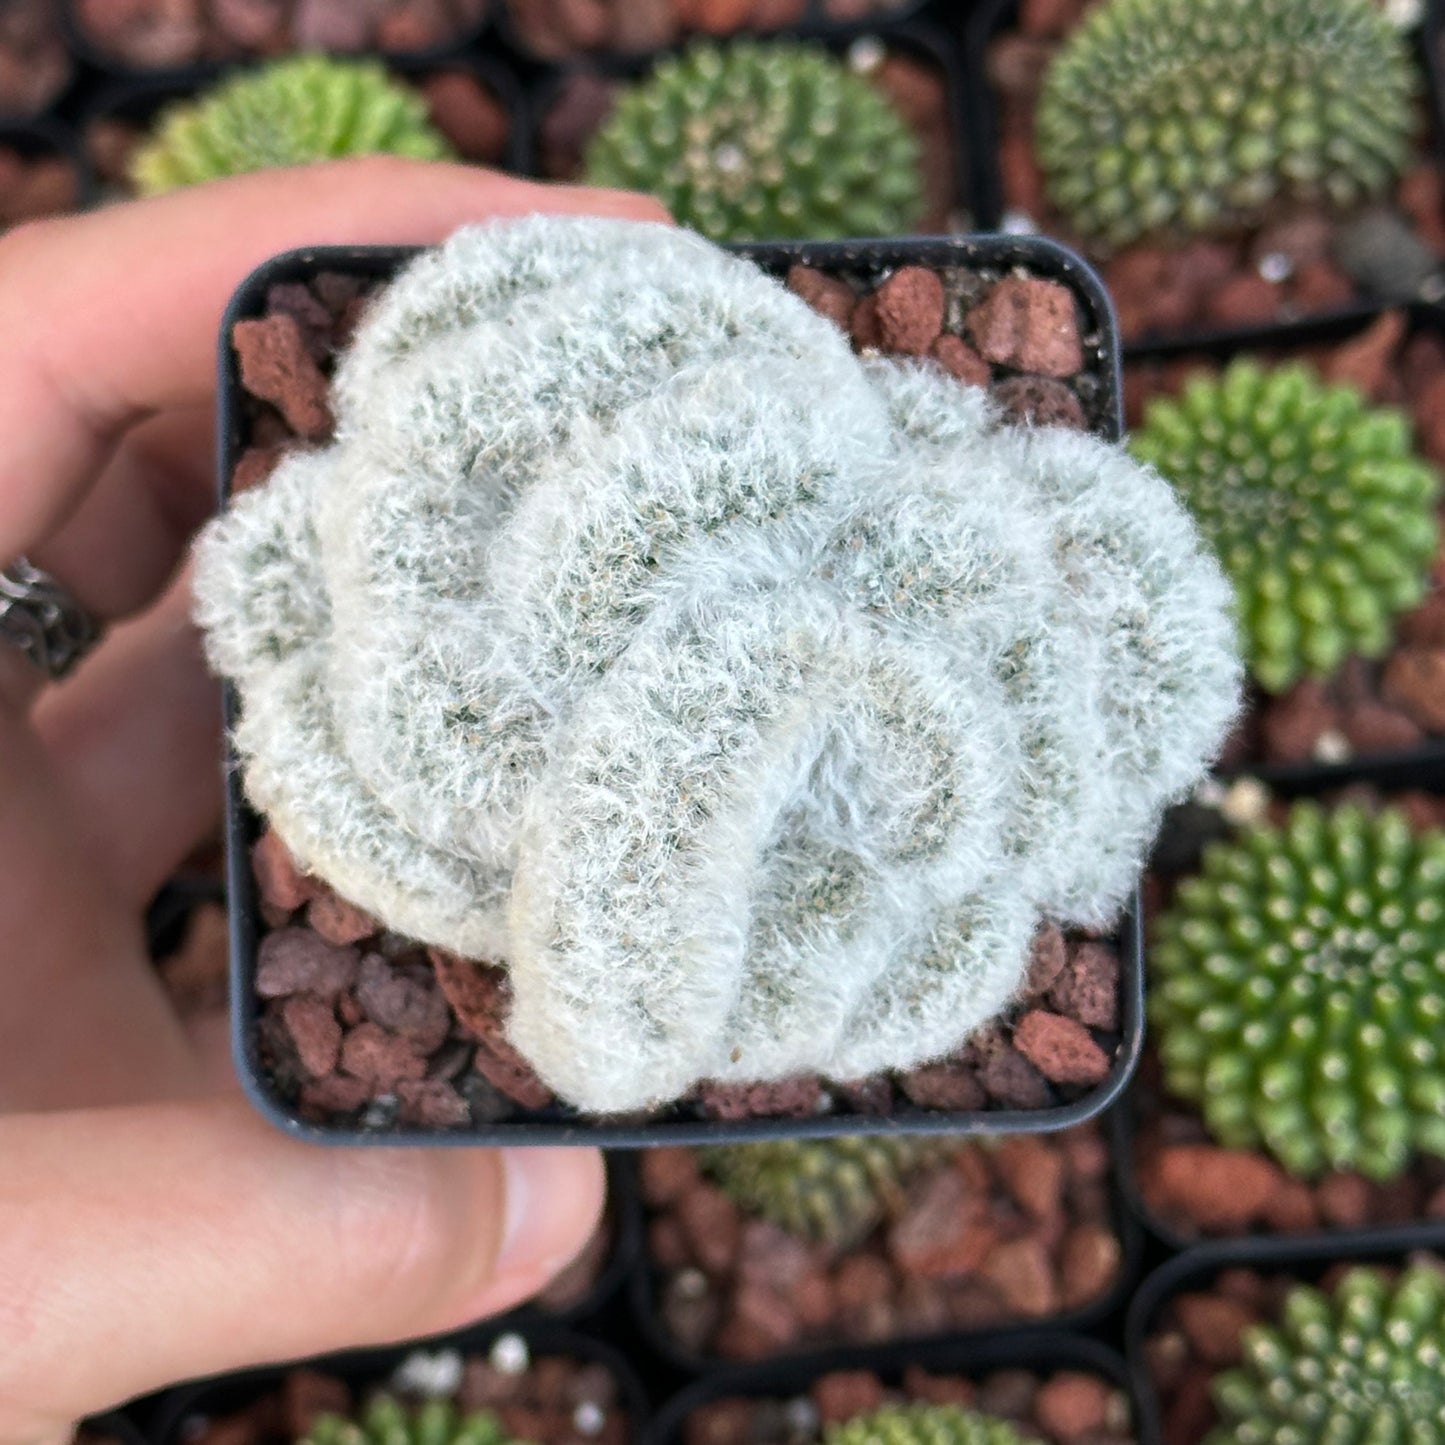 Mammilaria Albicoma “Fuzzy Brain Cactus”